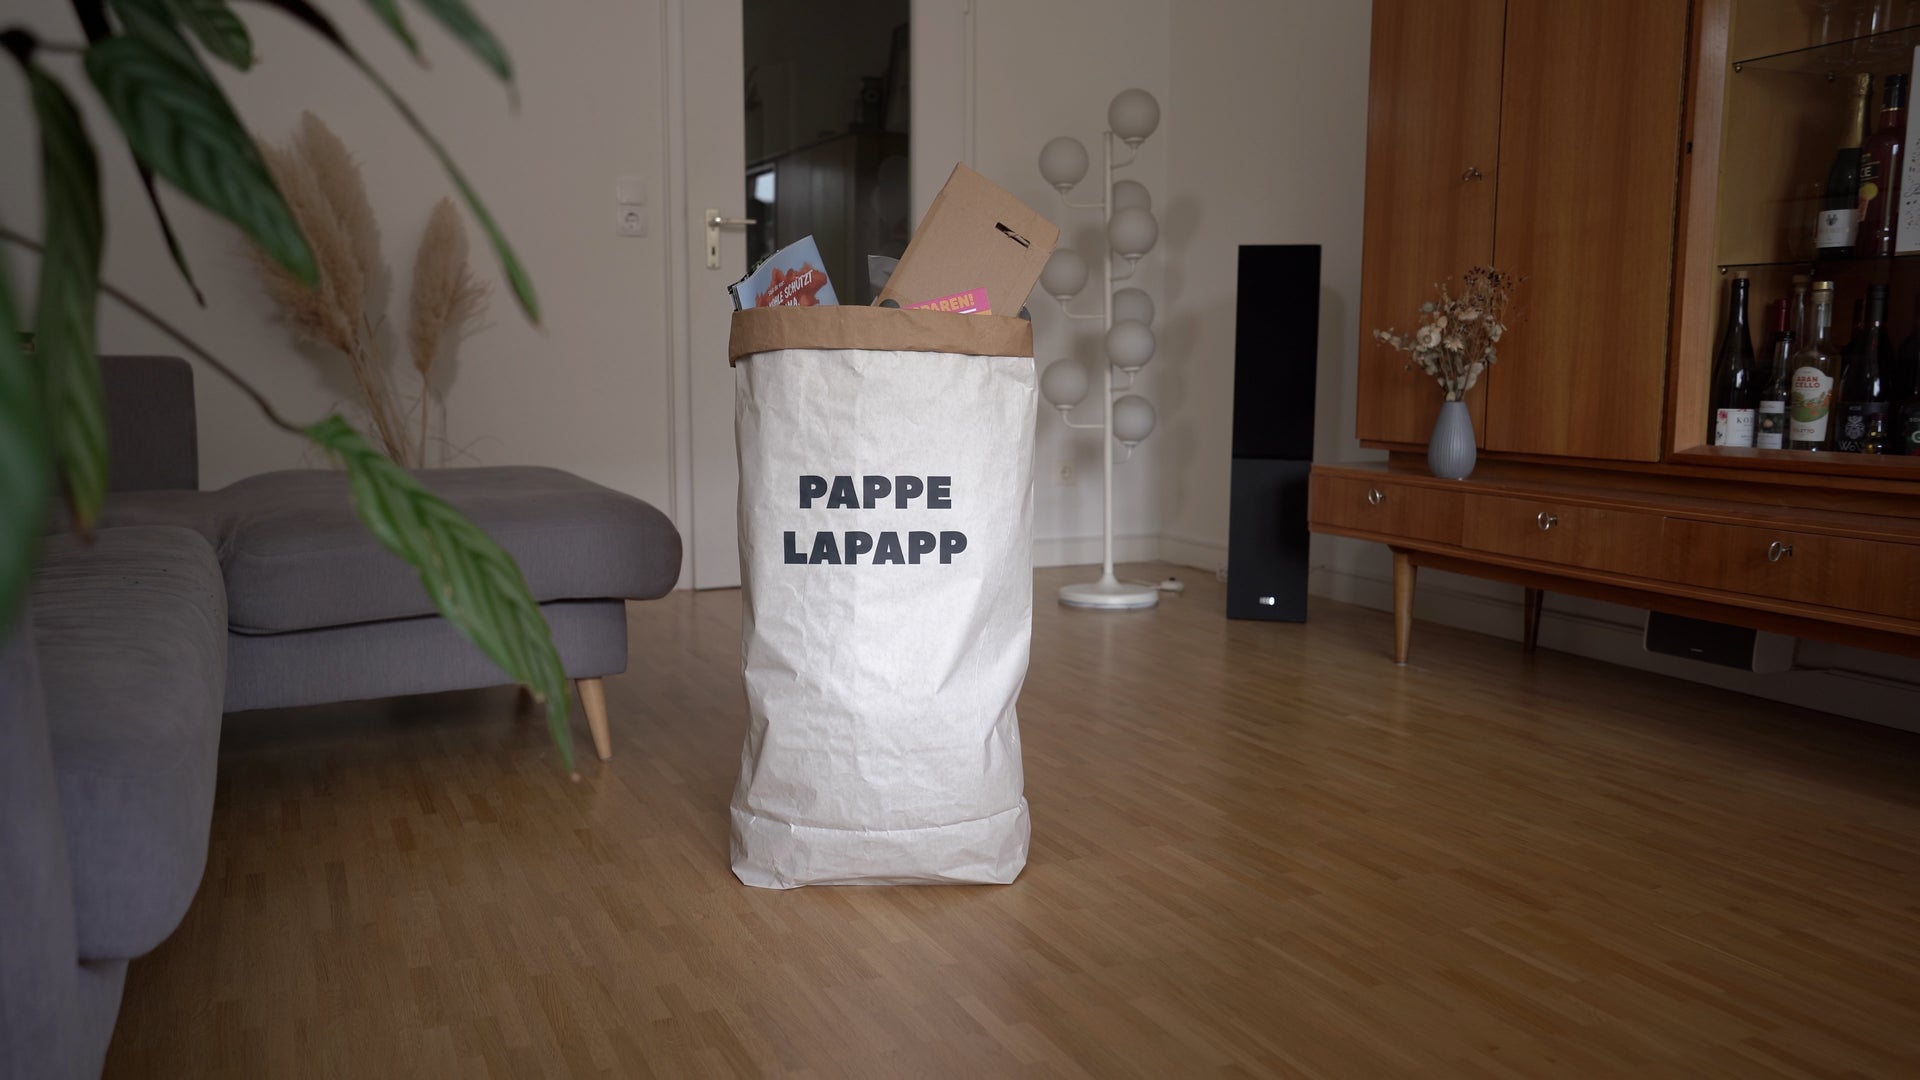 Video laden: Der Pappsack